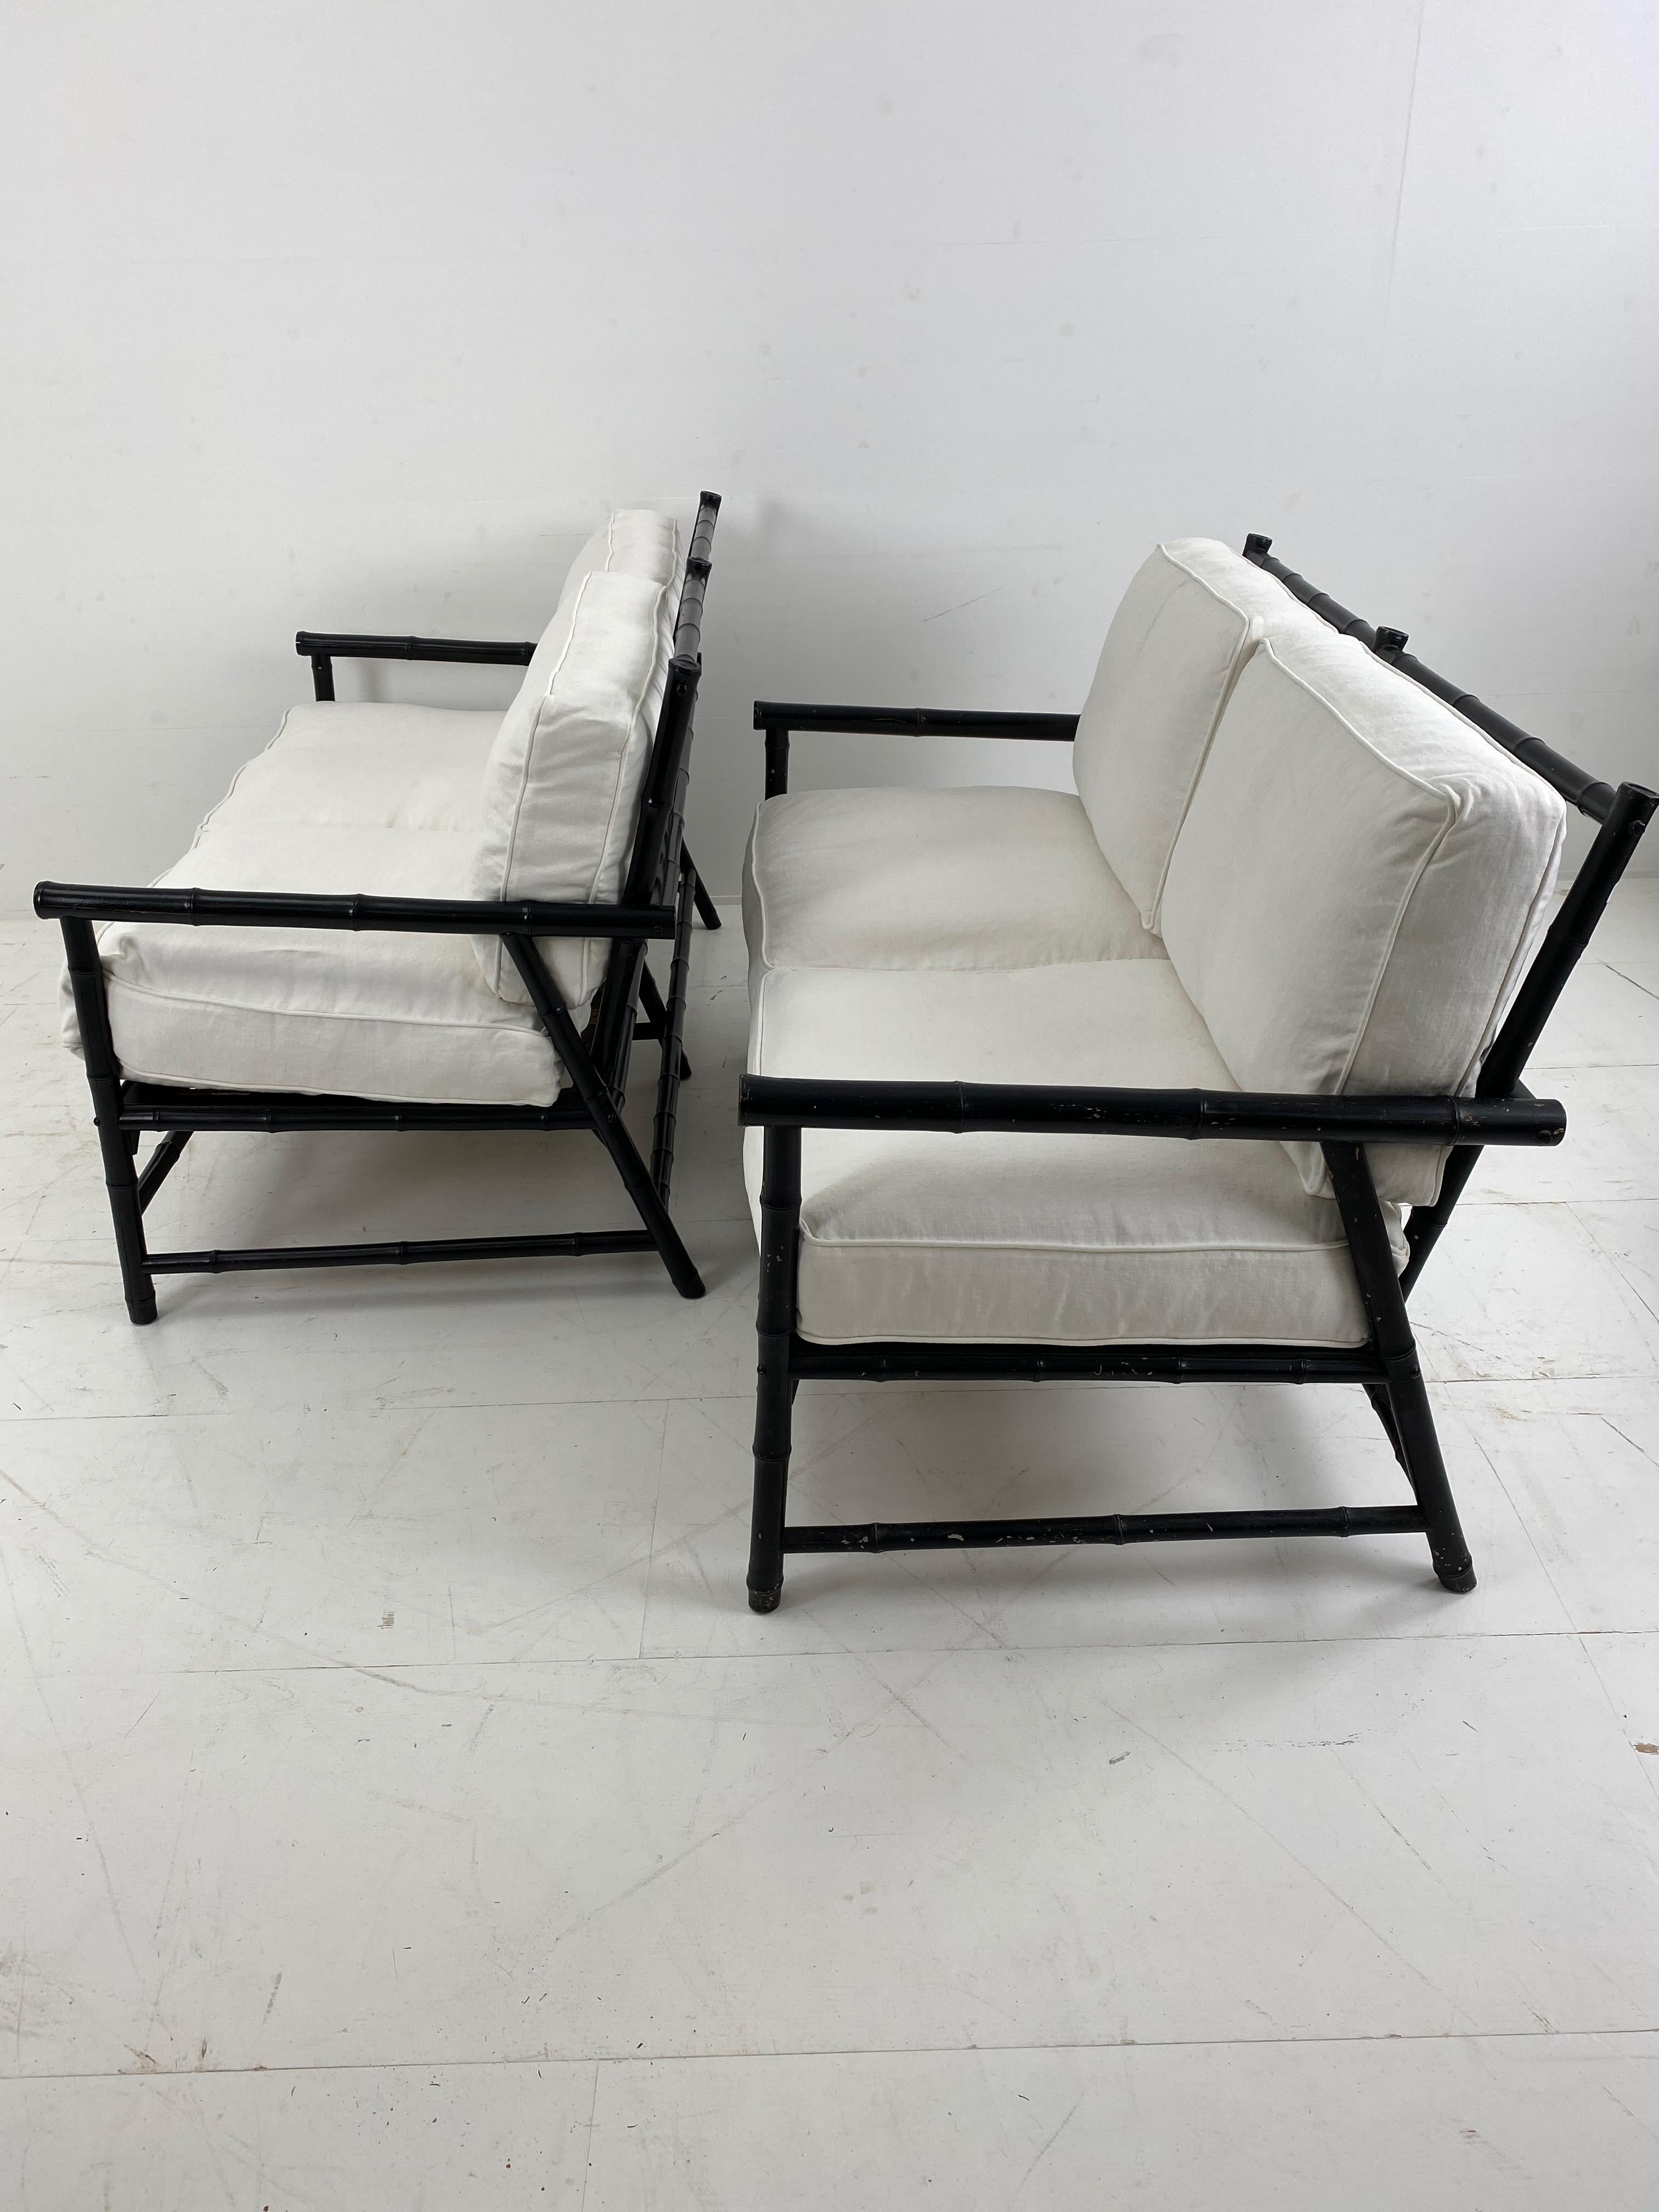 Außergewöhnliche Black Bamboo Settee Paar, 2-Sitzer,
neue gepolsterte Kissen, sehr bequemes Sitzen,
Frankreich, 1950er Jahre
Gestempelt Maurice Lauer, Cogolin, Südfrankreich.
hochwertige Vintage-Möbel